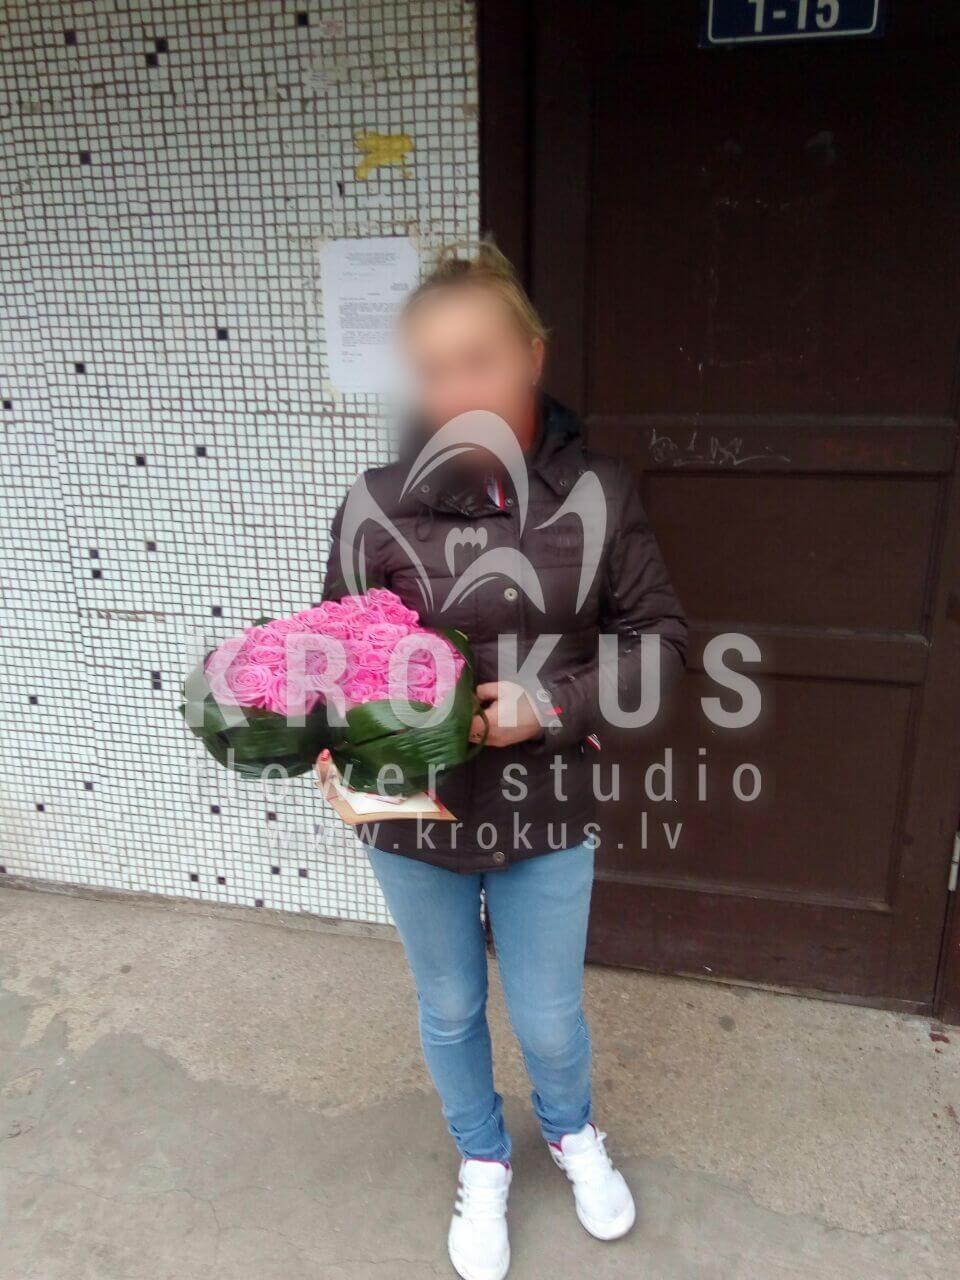 Доставка цветов в город Latvia (розовые розыберграсс
салаласпидистра)